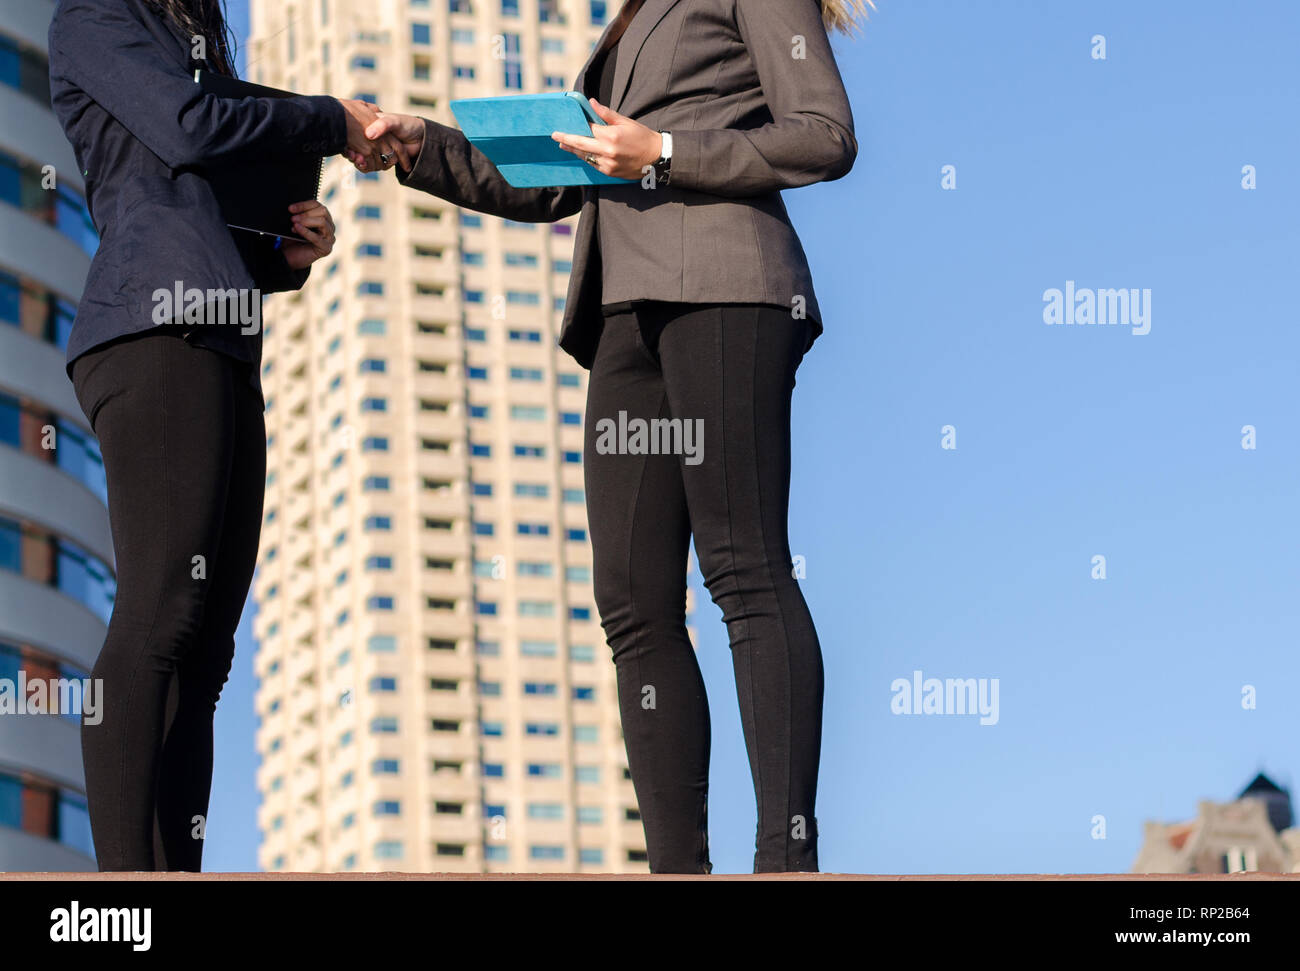 Deux jeunes femmes non identifiables holding tablets serrer la main d'immeubles d'habitation en arrière-plan qui suggère un bien immobilier ou transaction immobilière - Banque D'Images